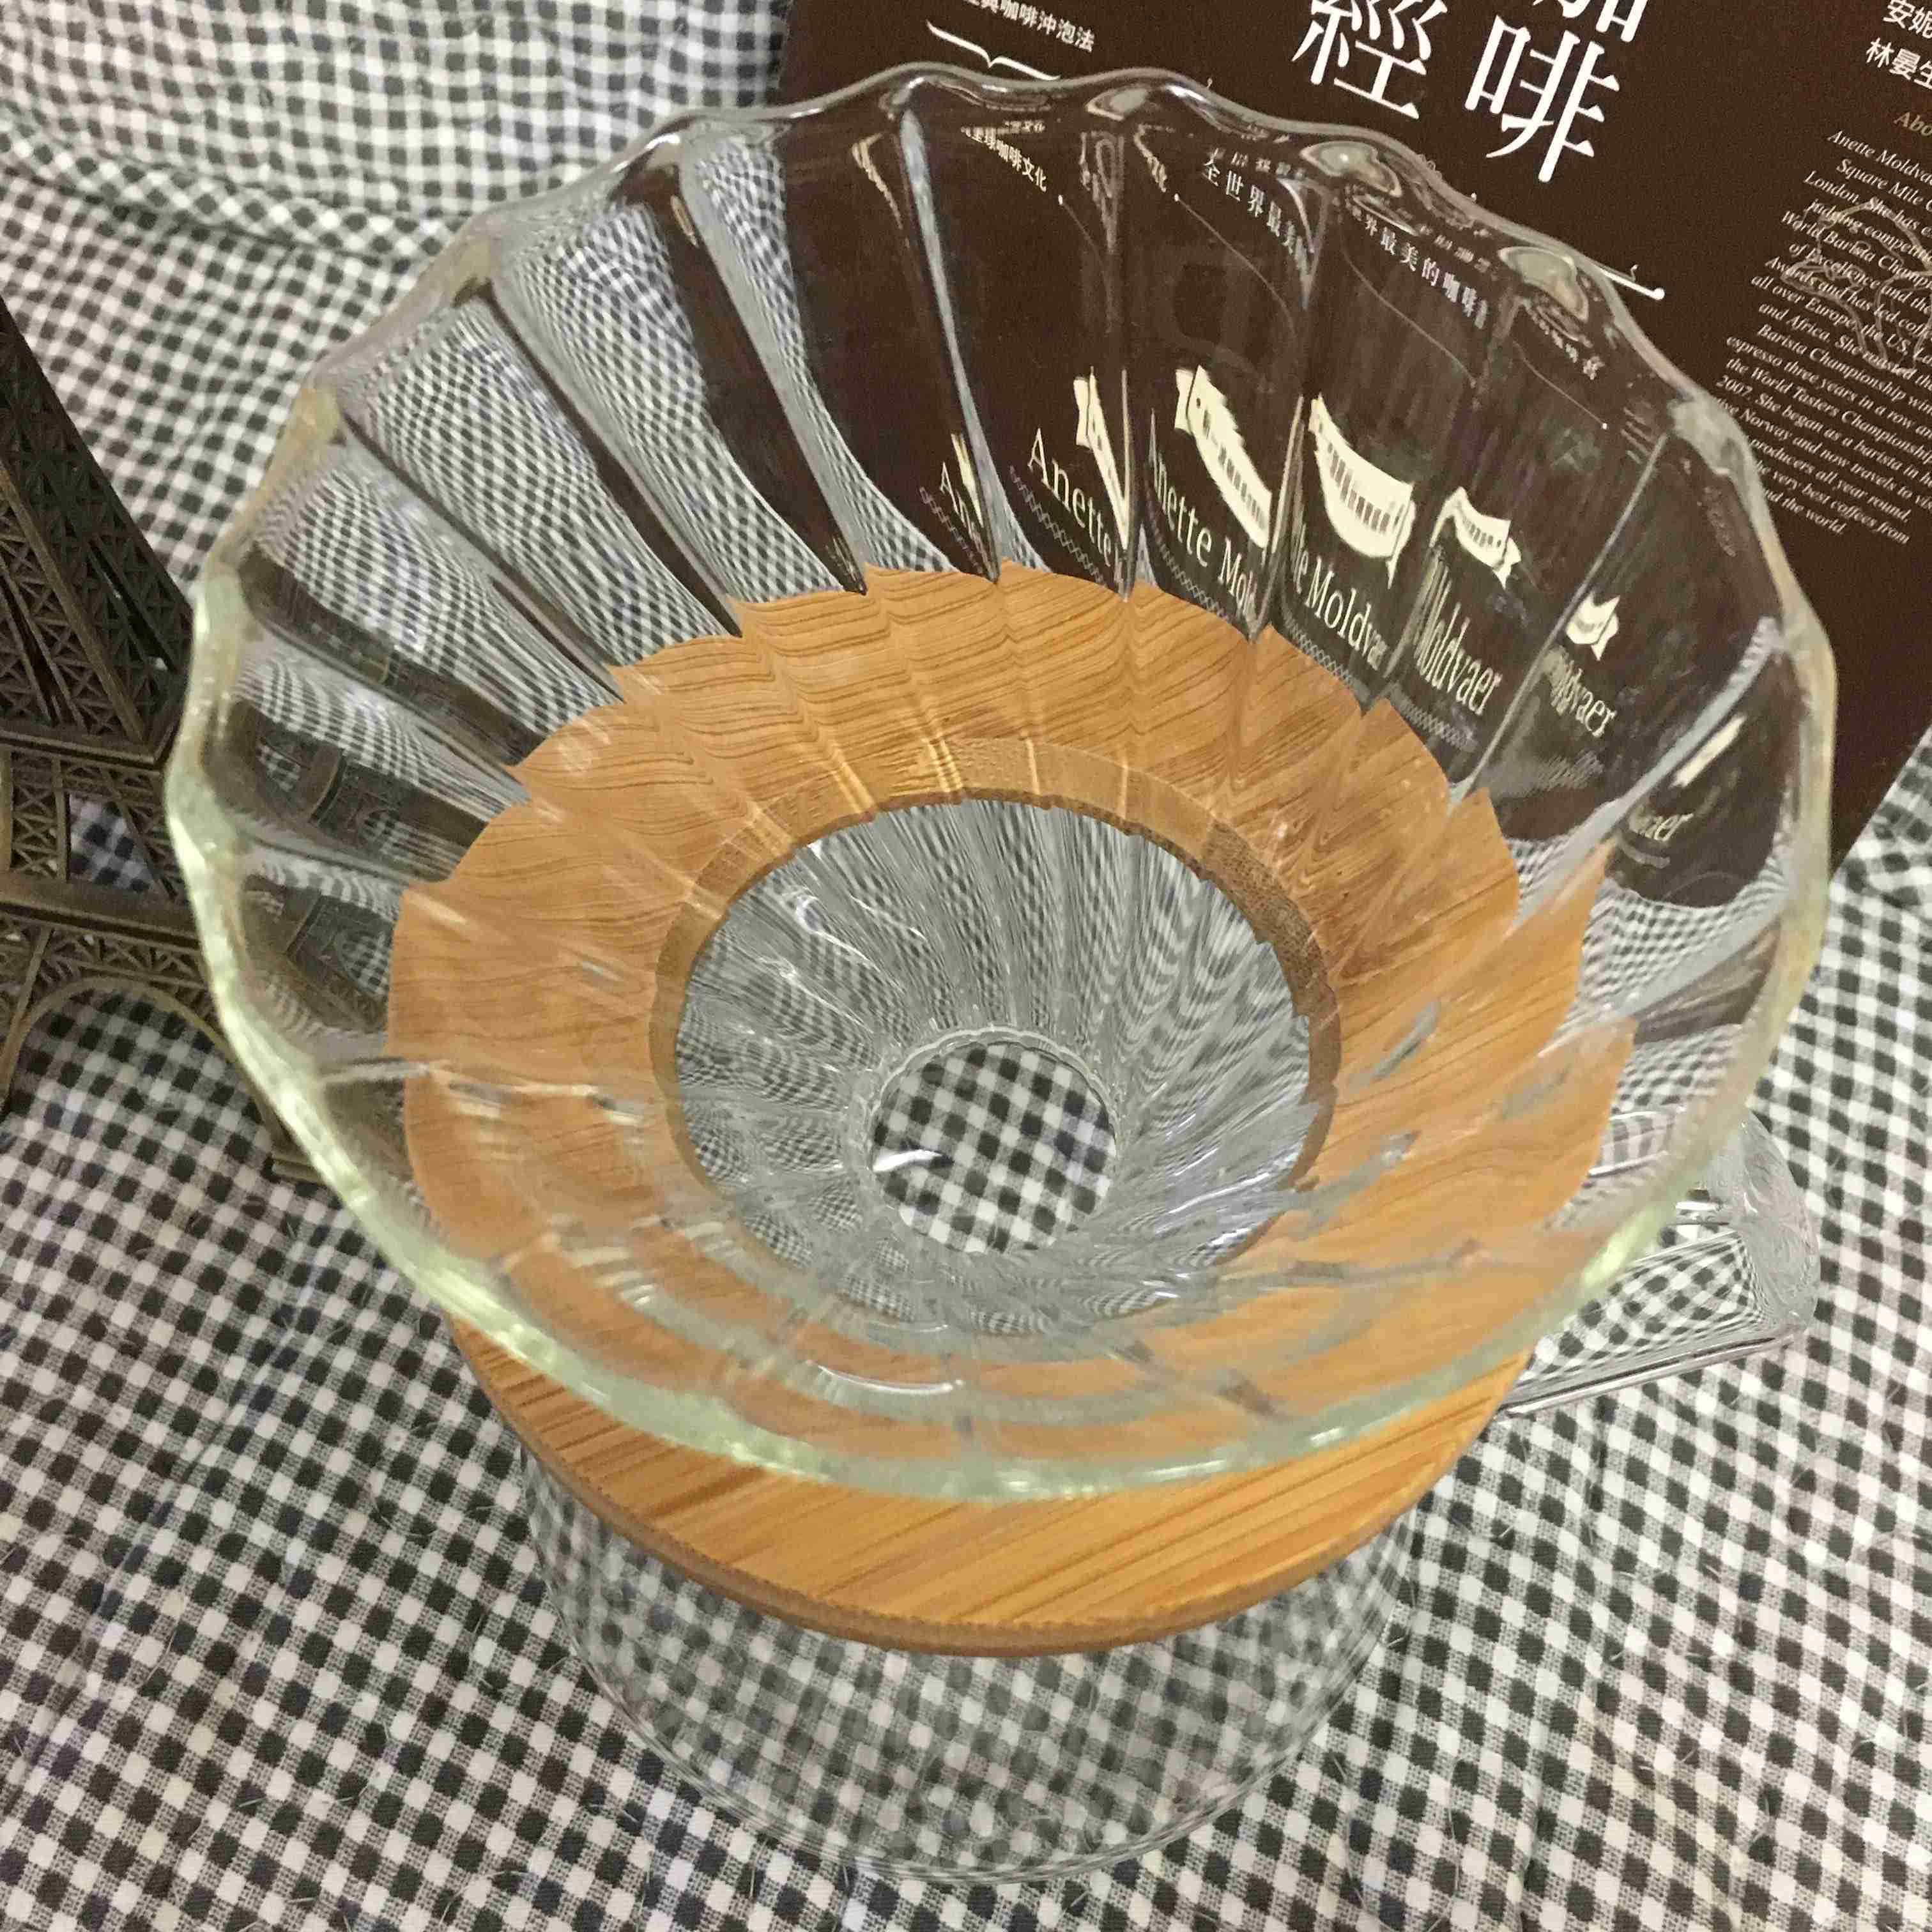 【現貨】木托 玻璃濾杯 濾杯 玻璃濾杯咖啡濾杯 咖啡濾器V02 1~4人份 適用hario v02濾紙